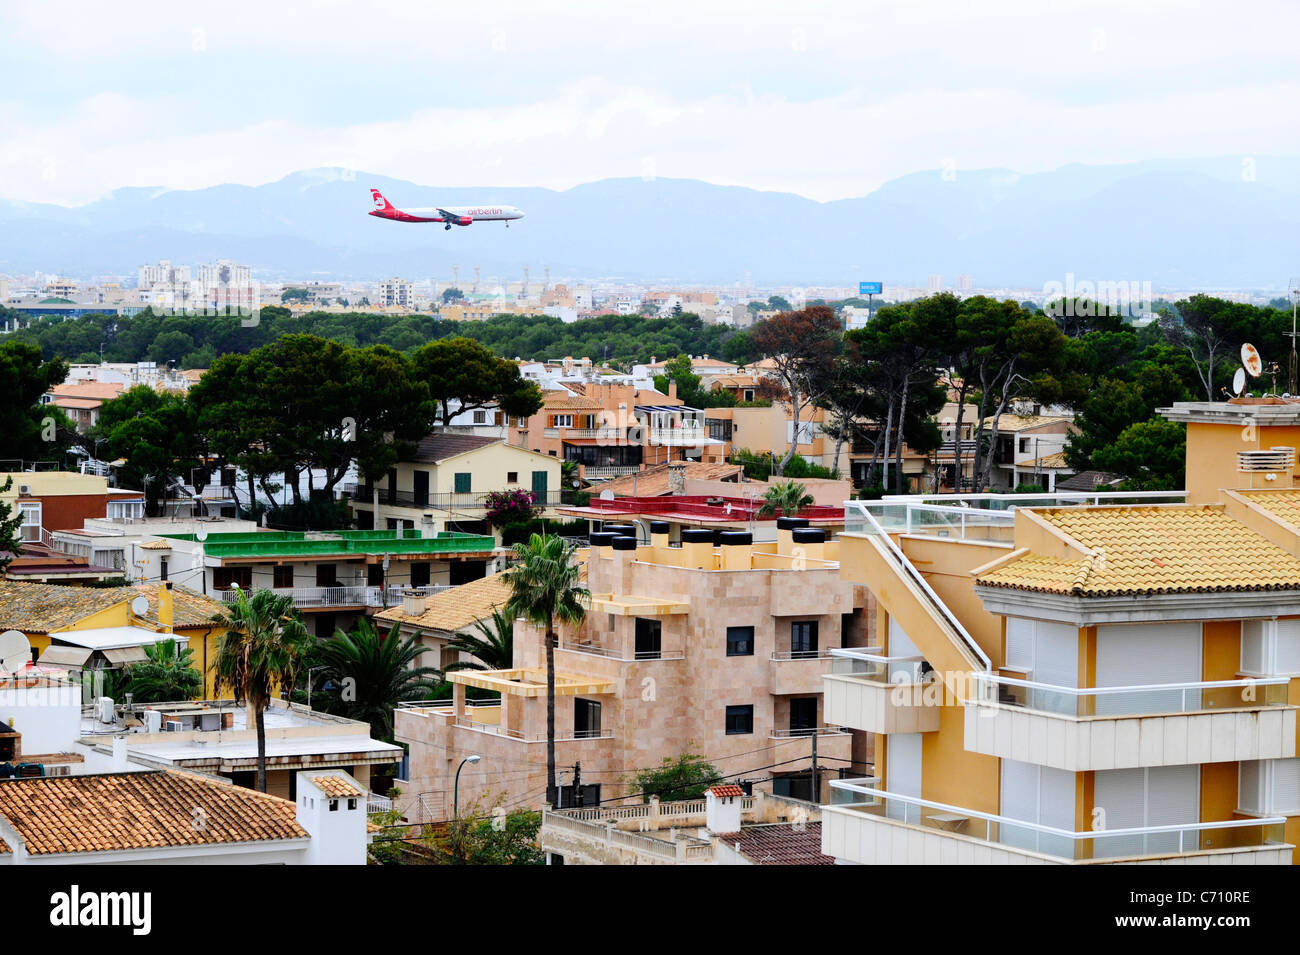 An Air Berlin aircraft coming in to land at Palma airport, Mallorca. Stock Photo